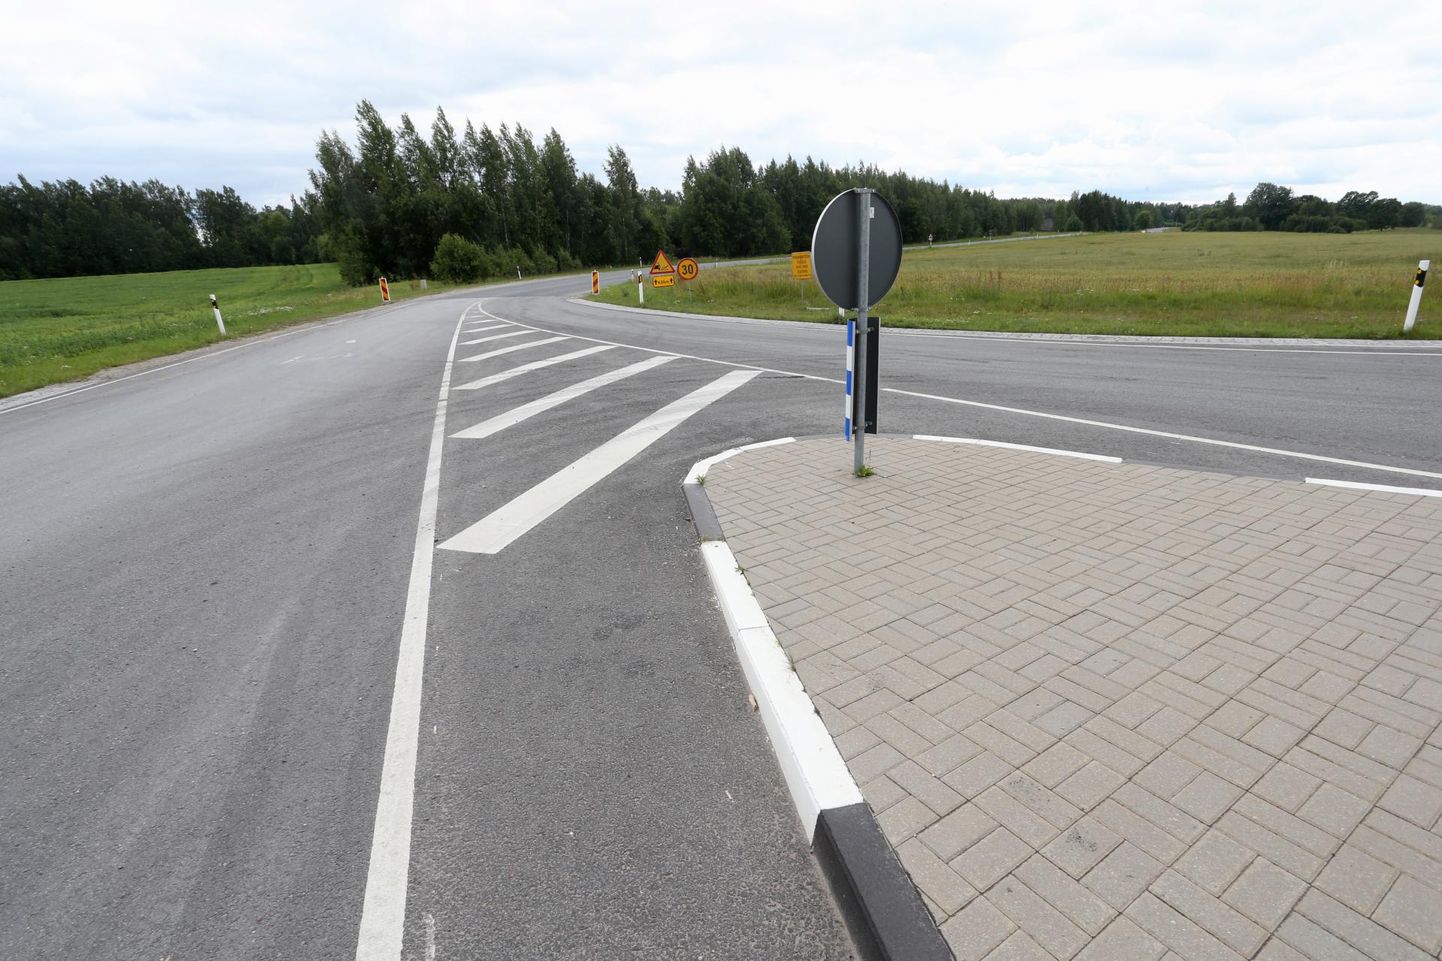 Sellest kohast Järiste külas Tartu-Valga maanteel peakski tulevikus algama kergliiklustee, mis kulgeb Nõost Elvani.